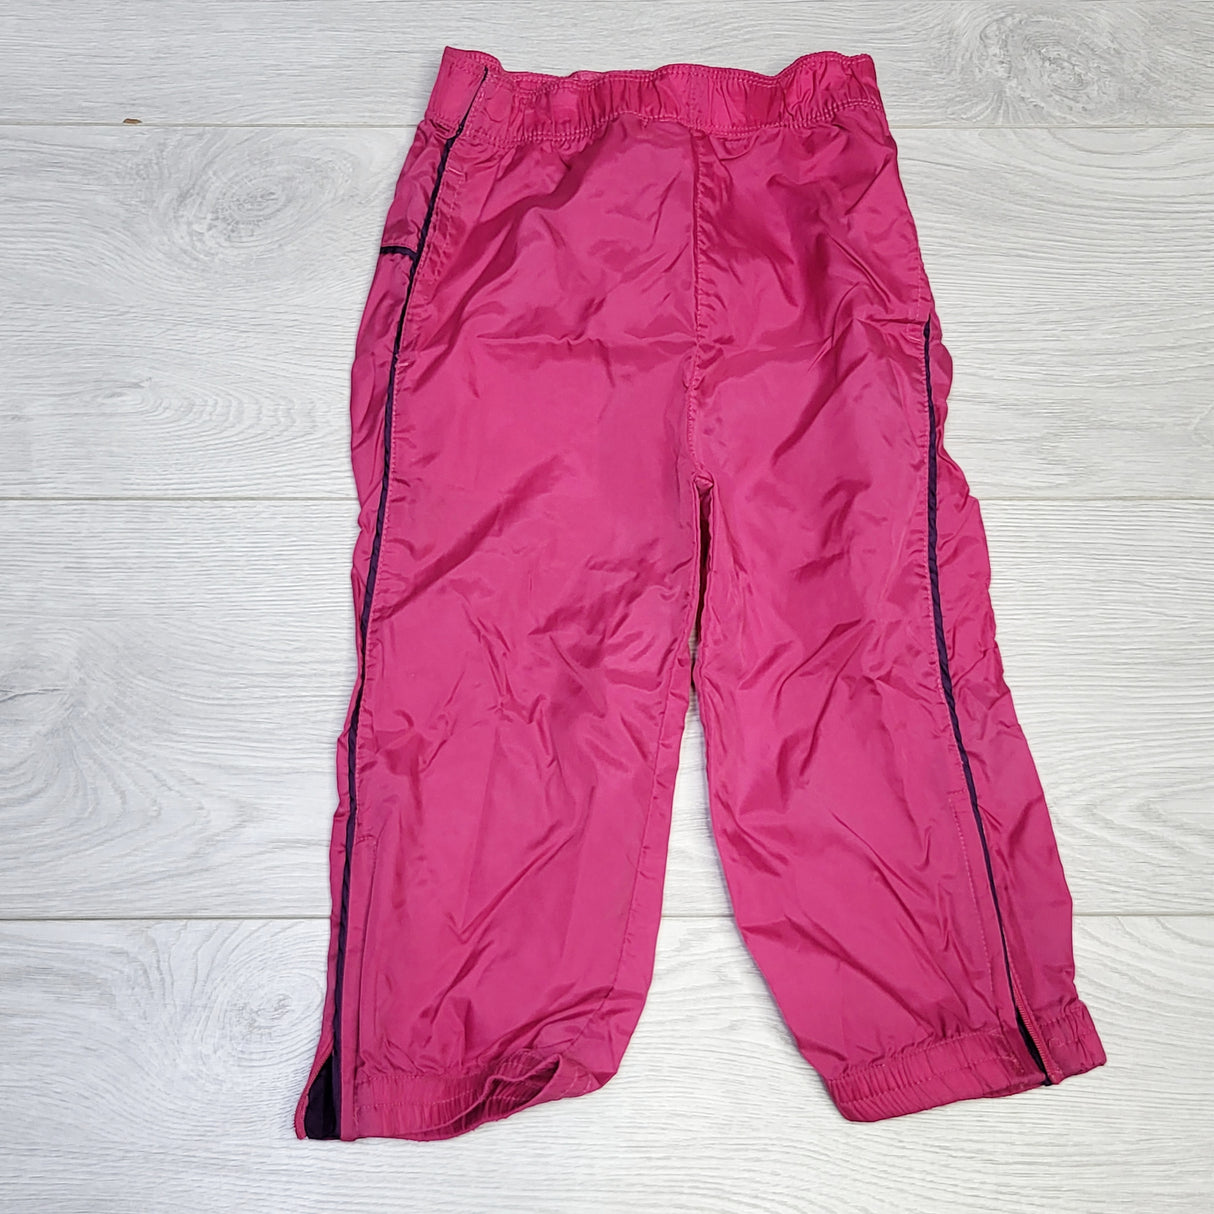 KJHN1 - Joe pink splash pants. Size 2T